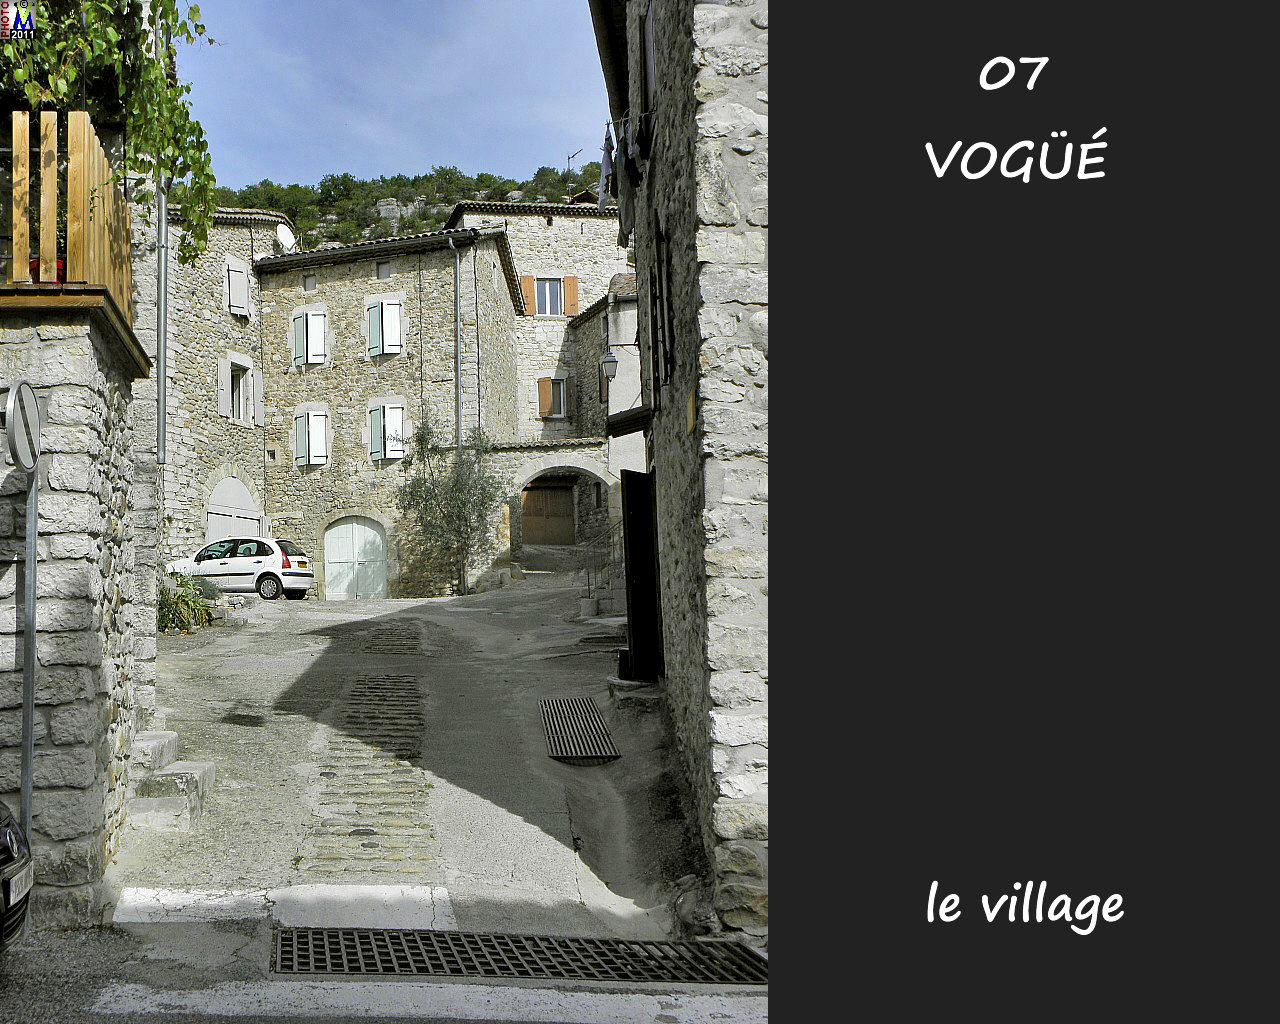 07VOGUE_village_110.jpg